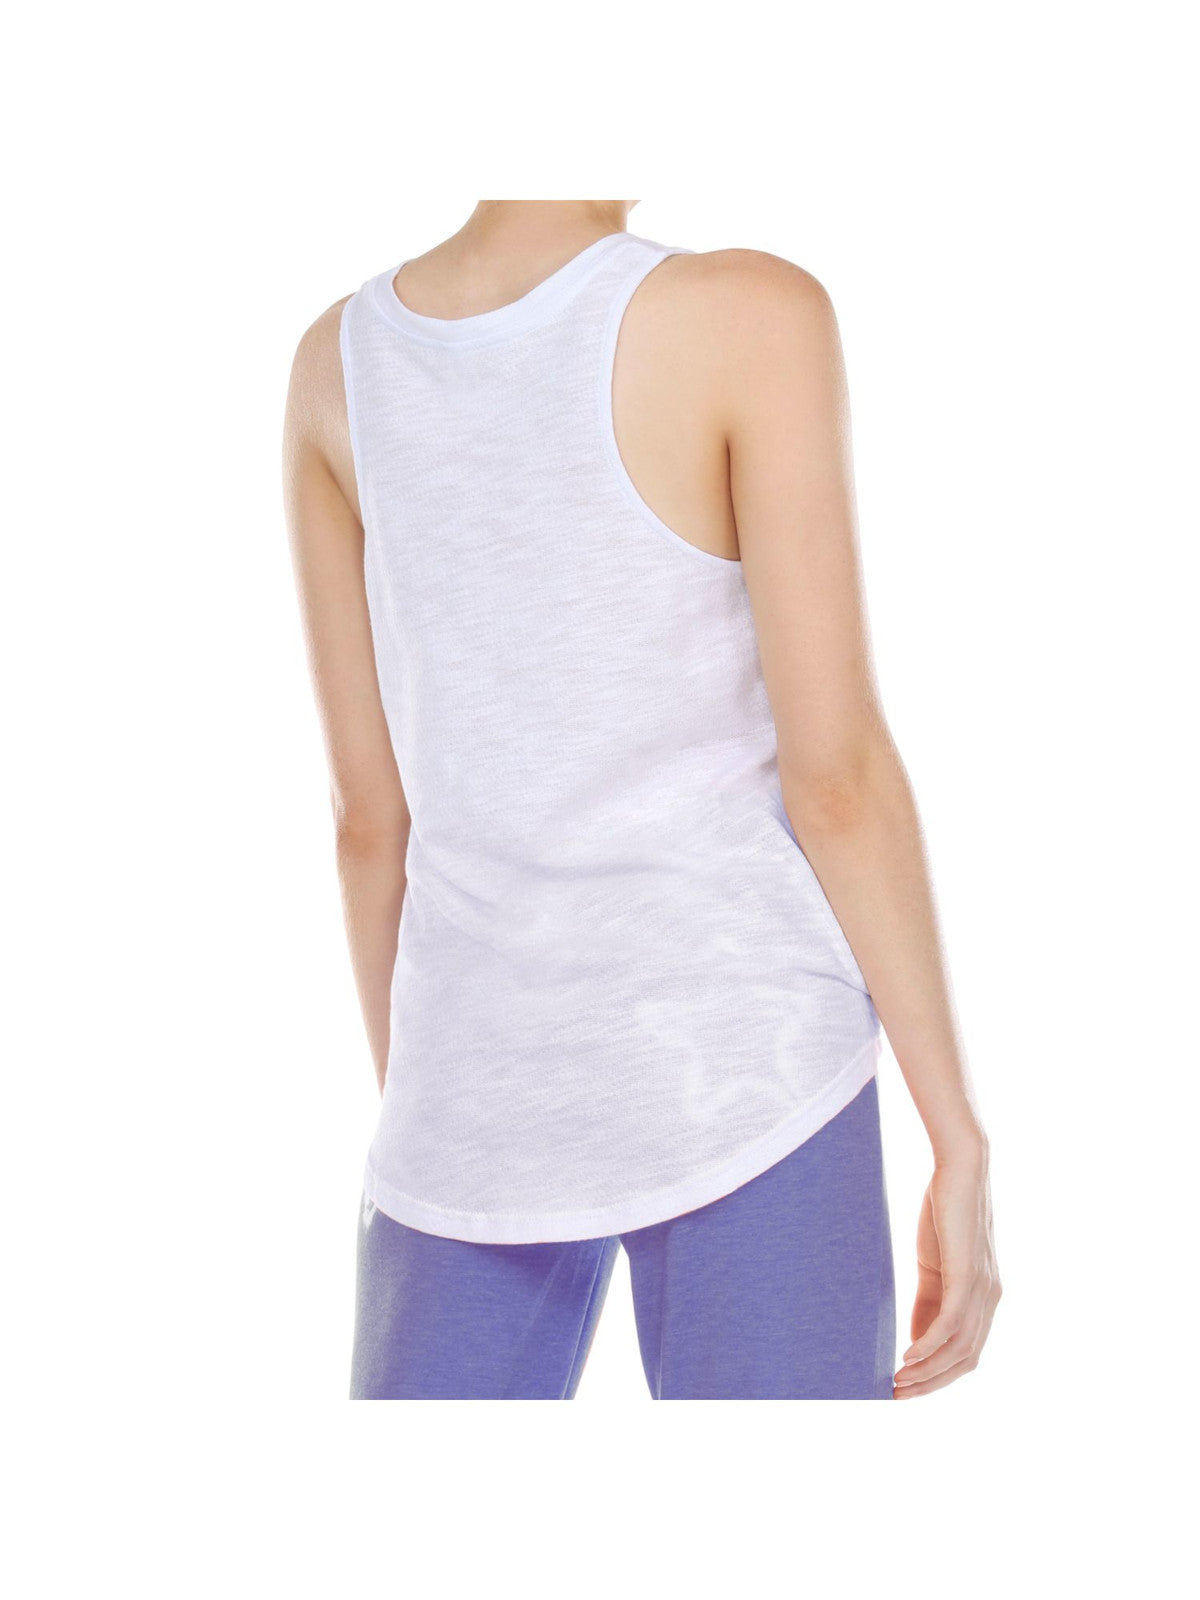 HONEYDEW Intimates White Slub Tank Sleep Shirt Pajama Top S